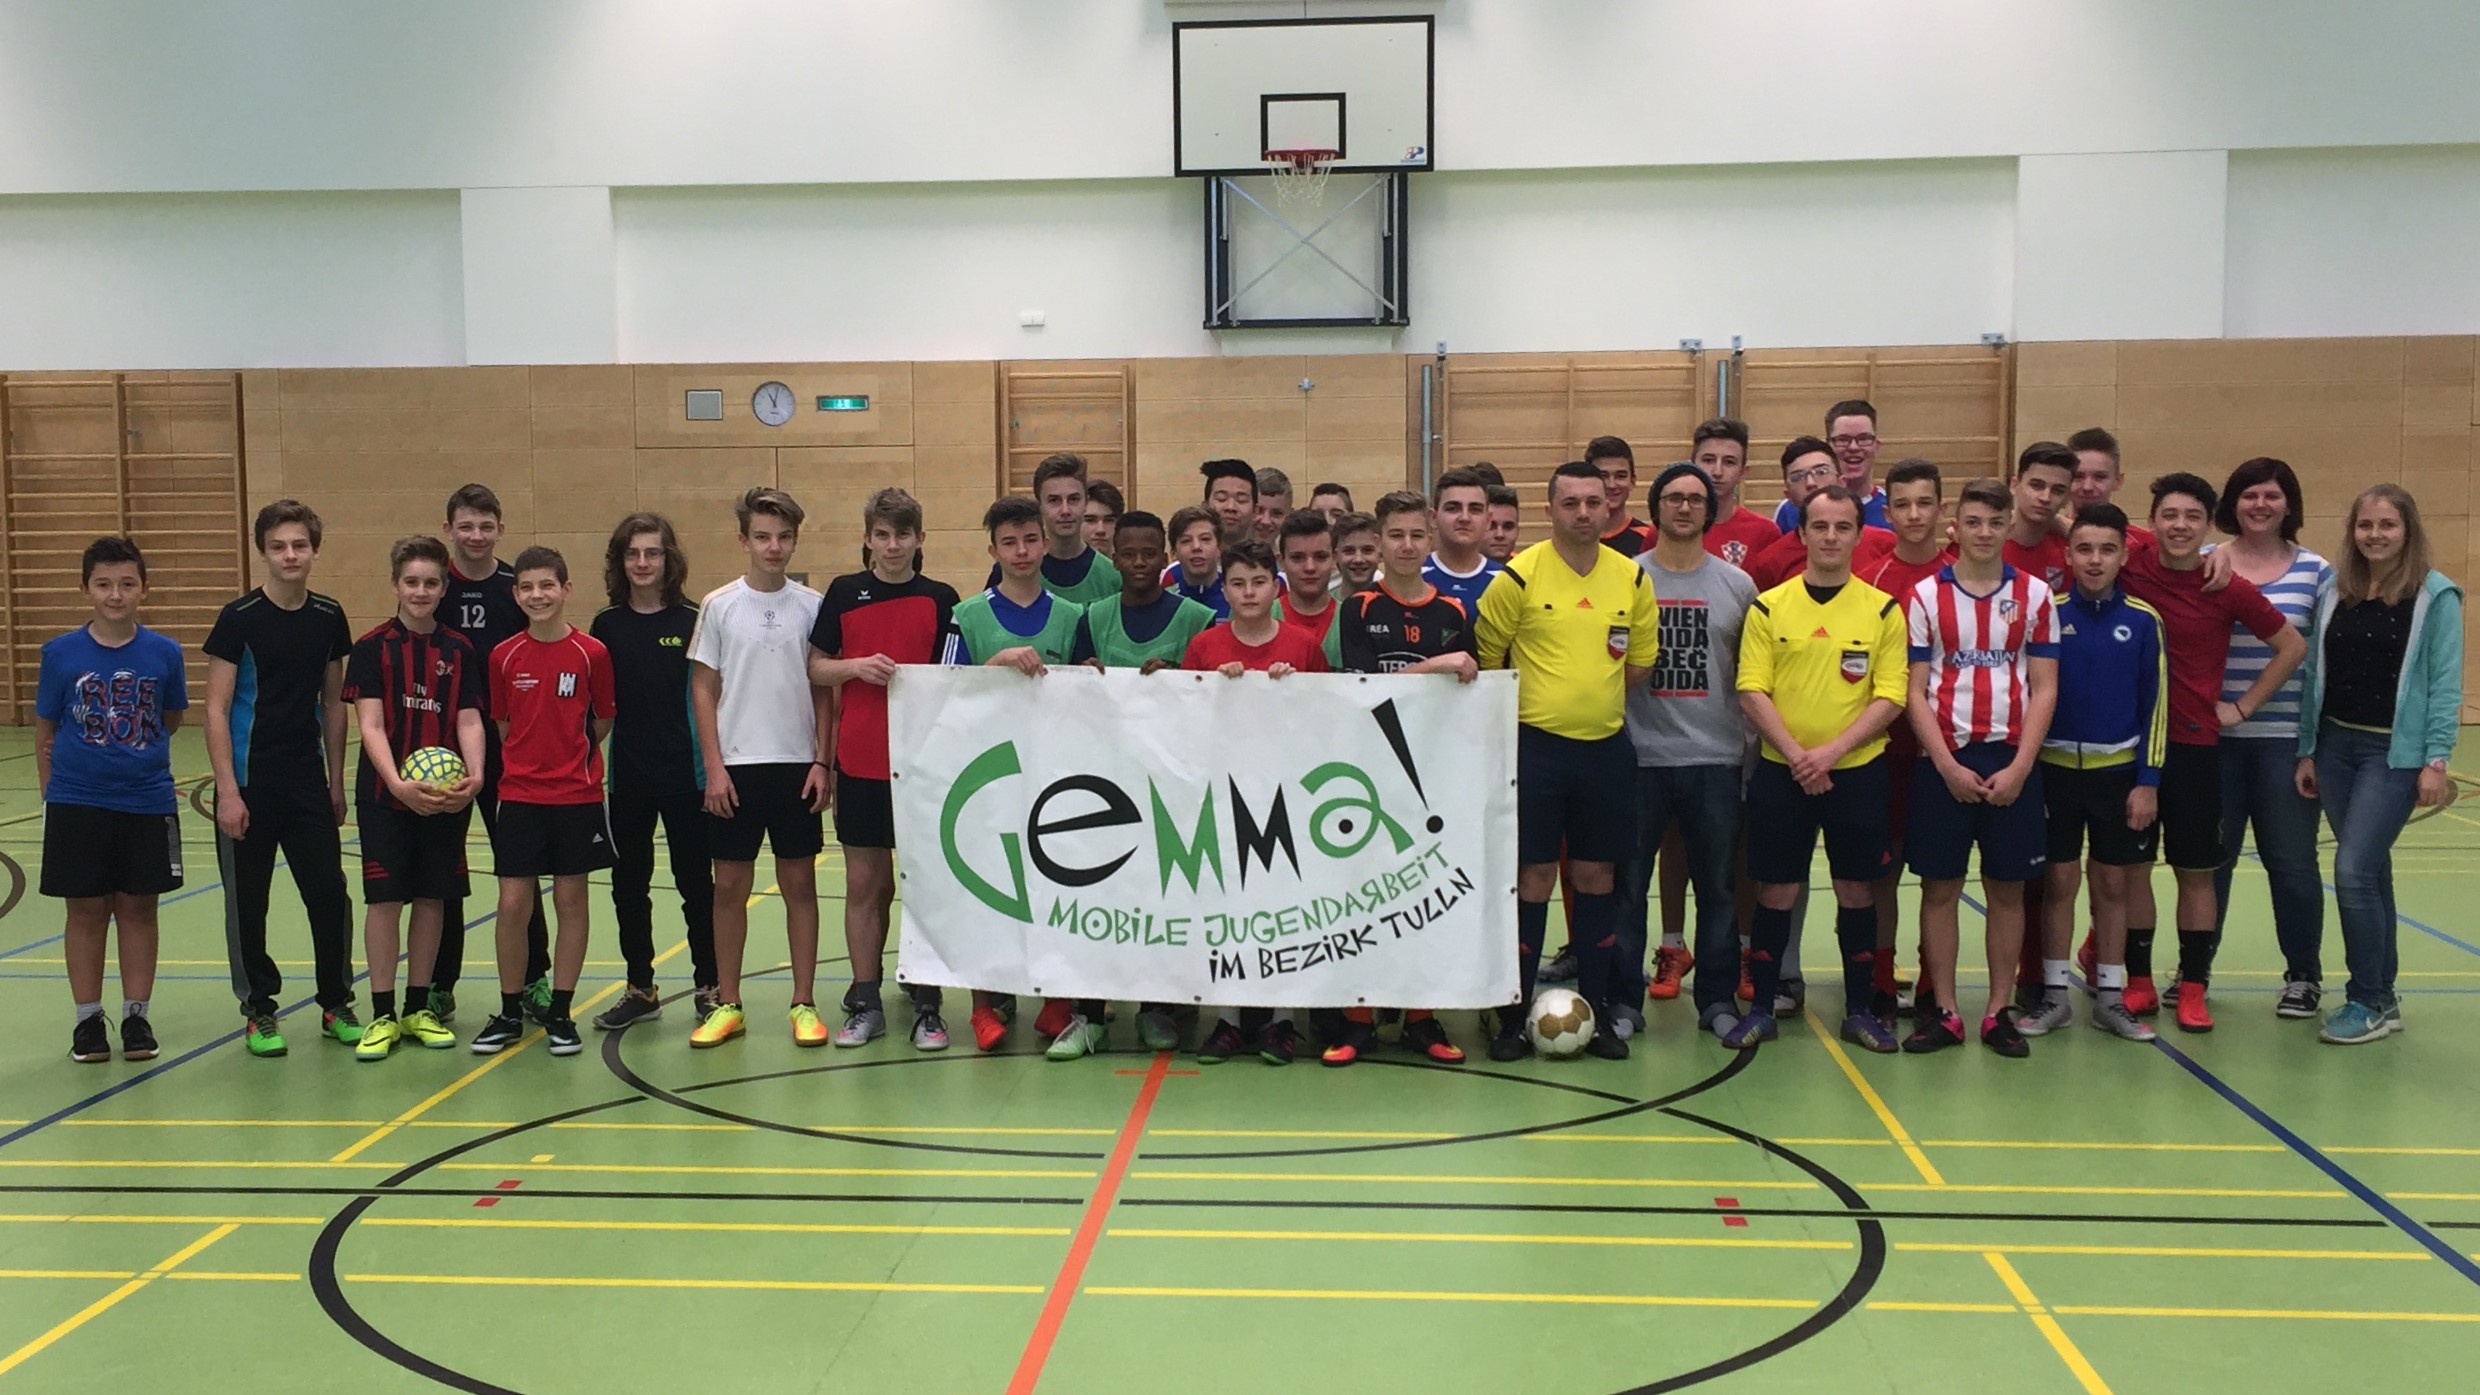 Über 100 Jugendliche spielten am Gemma! Futsal Cup 2017 um den Sieg. Wie immer hieß es dabei: Fair-Play!